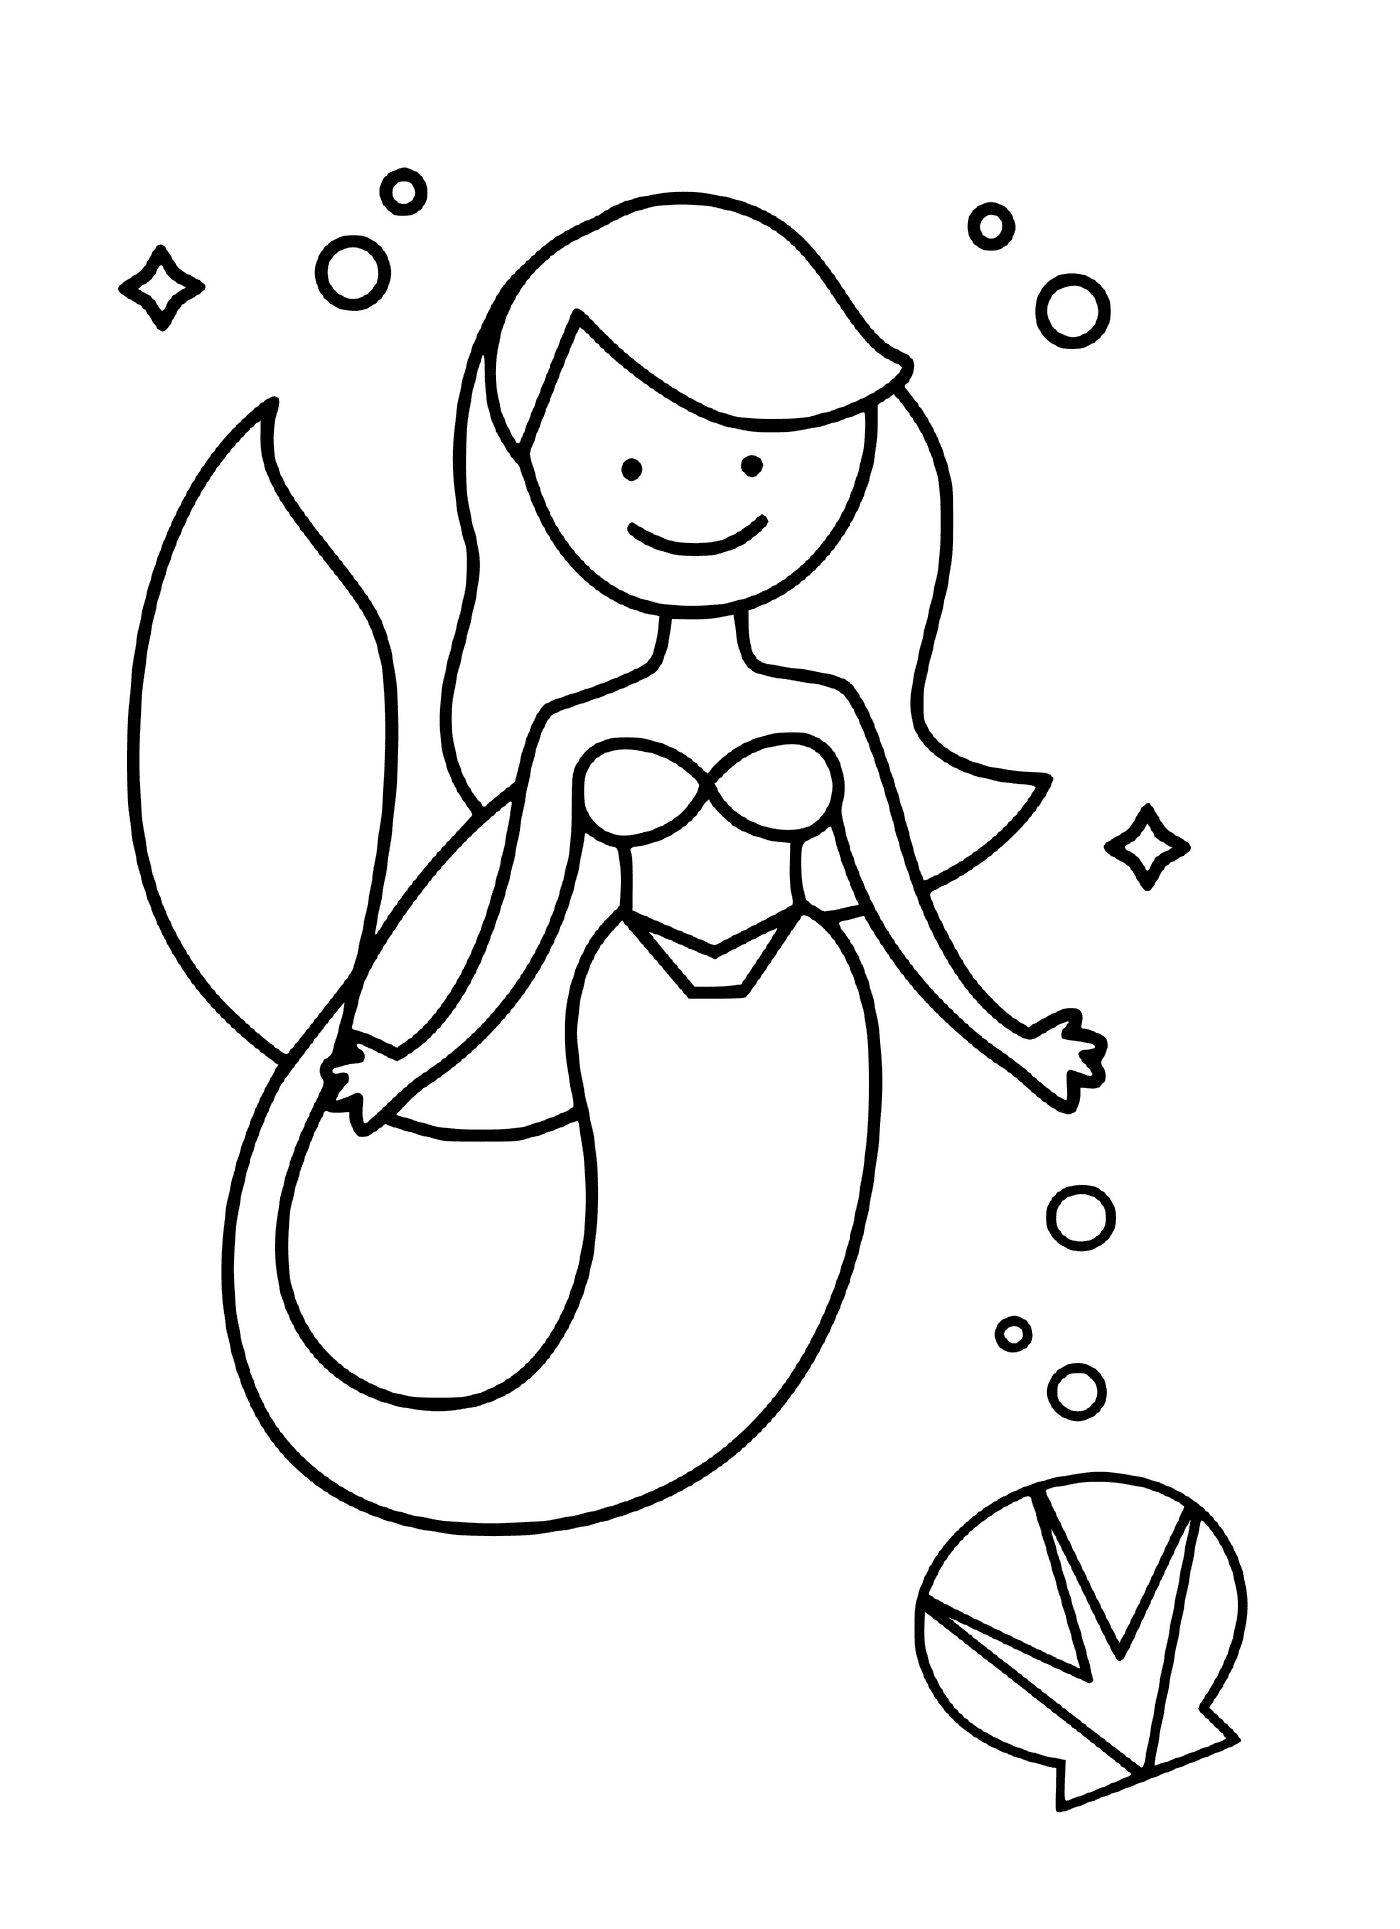 La princesse sirene comme Ariel de la Petite Sirene